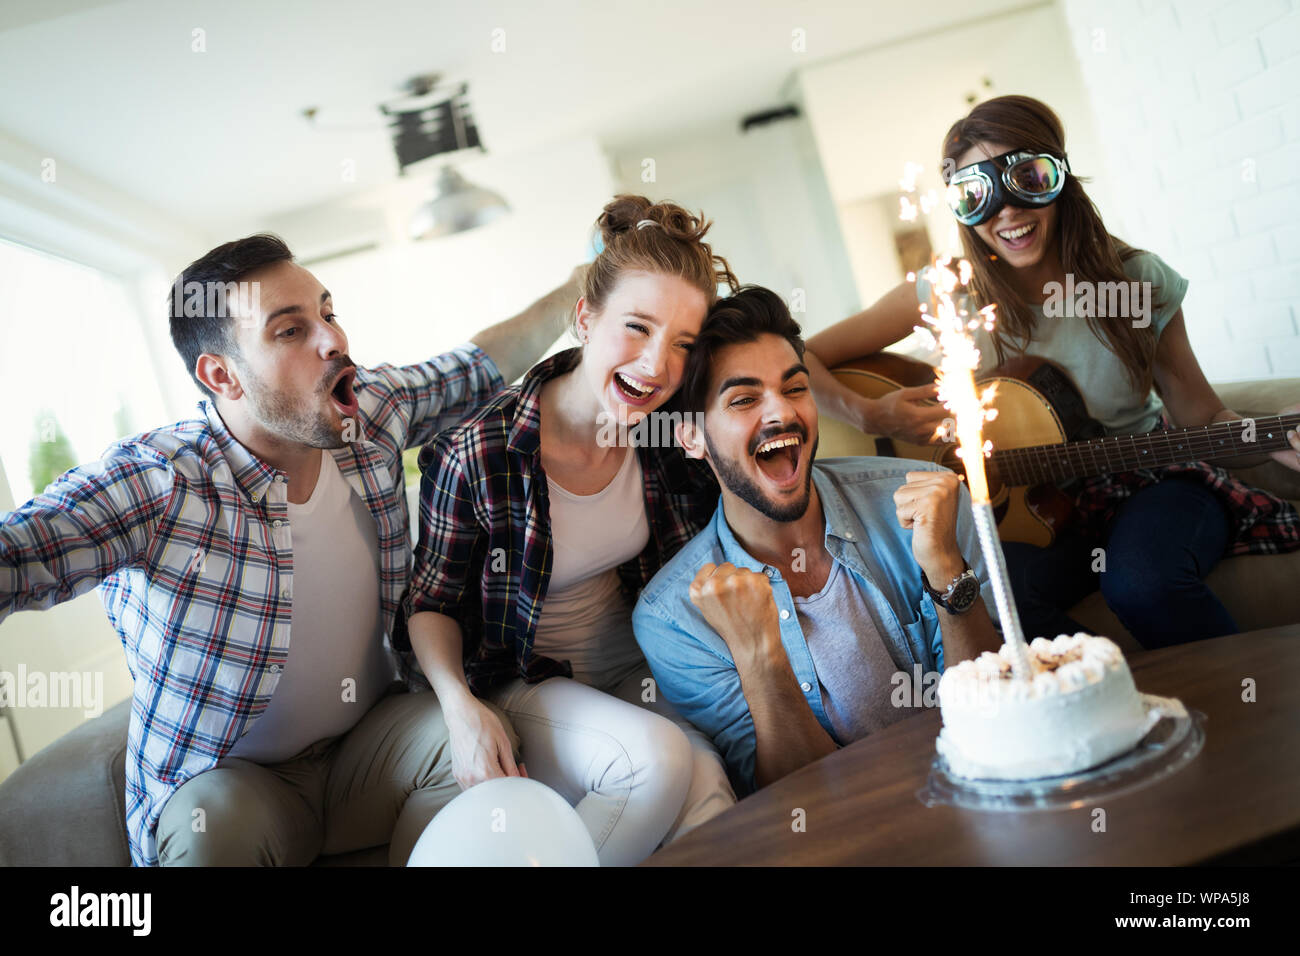 Jeune Groupe de happy friends celebrating birthday Banque D'Images